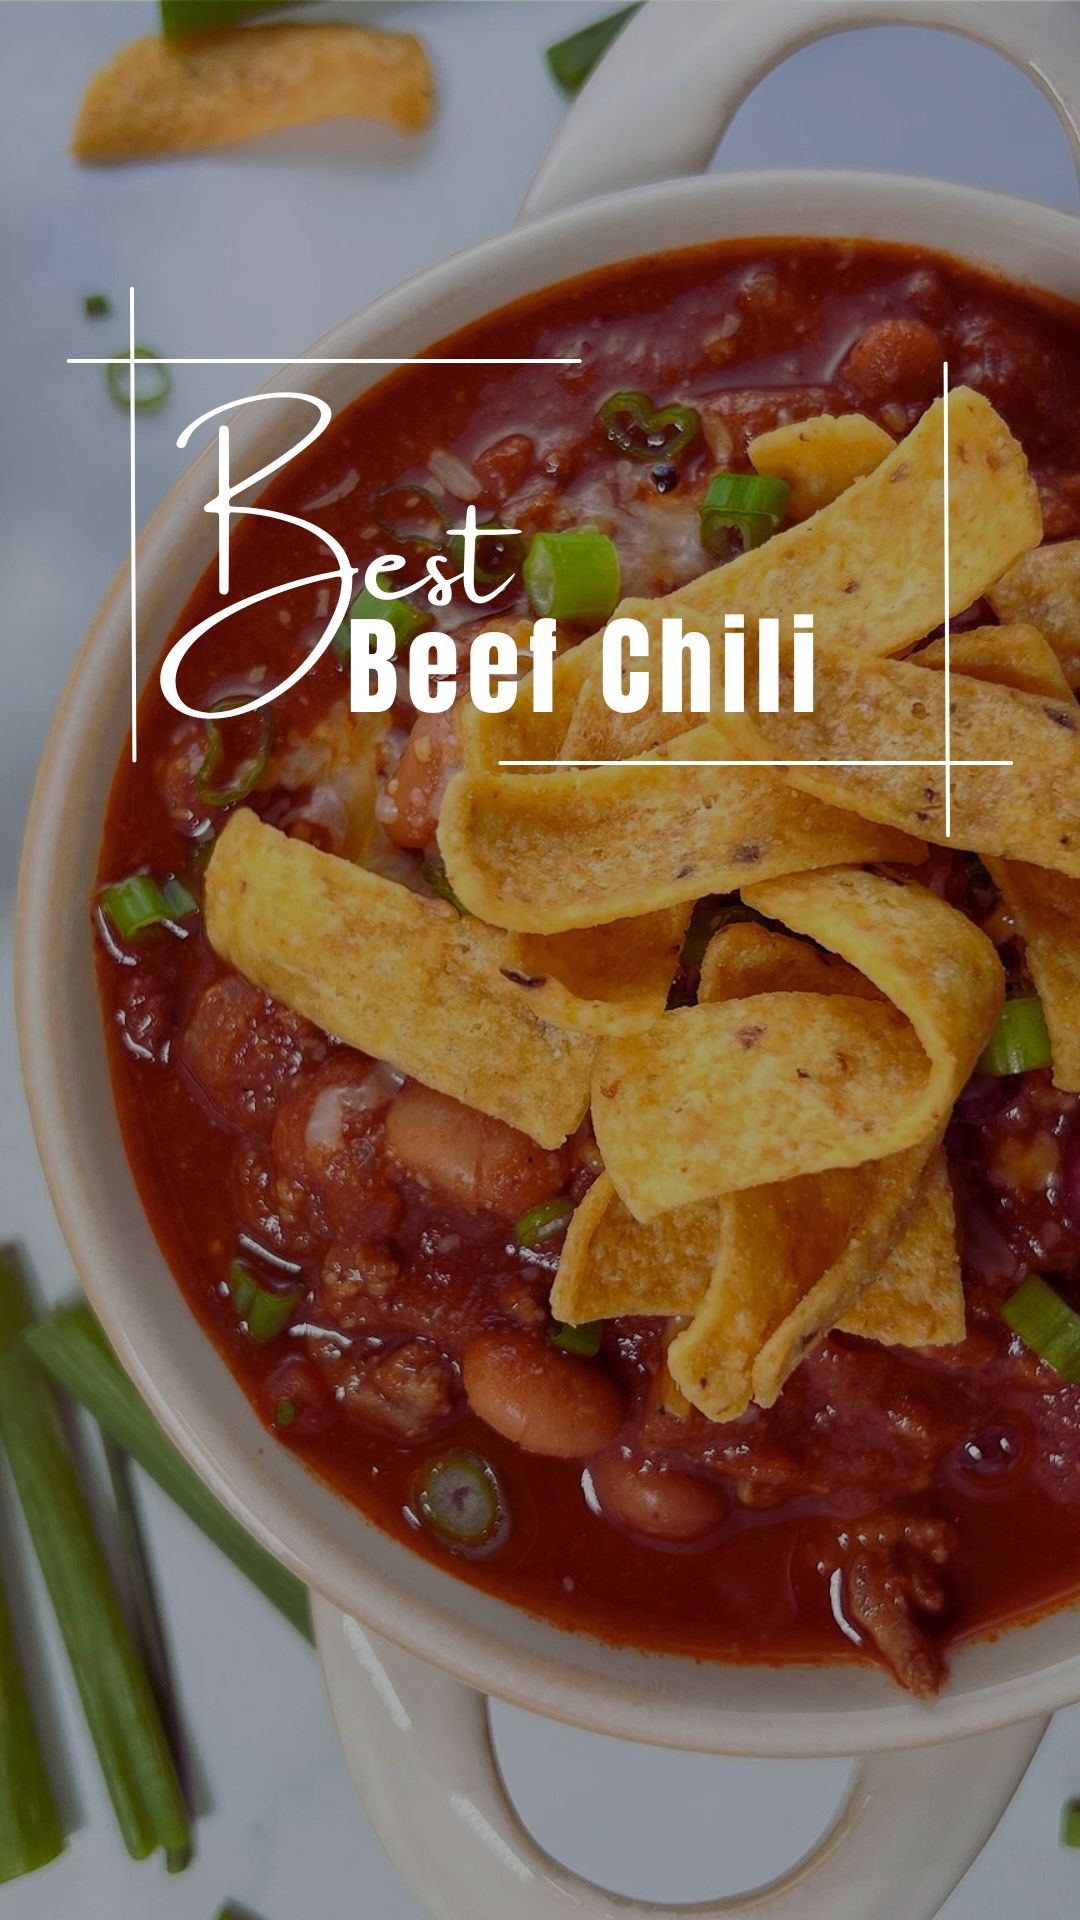 Best Beef Chili via @preventionrd